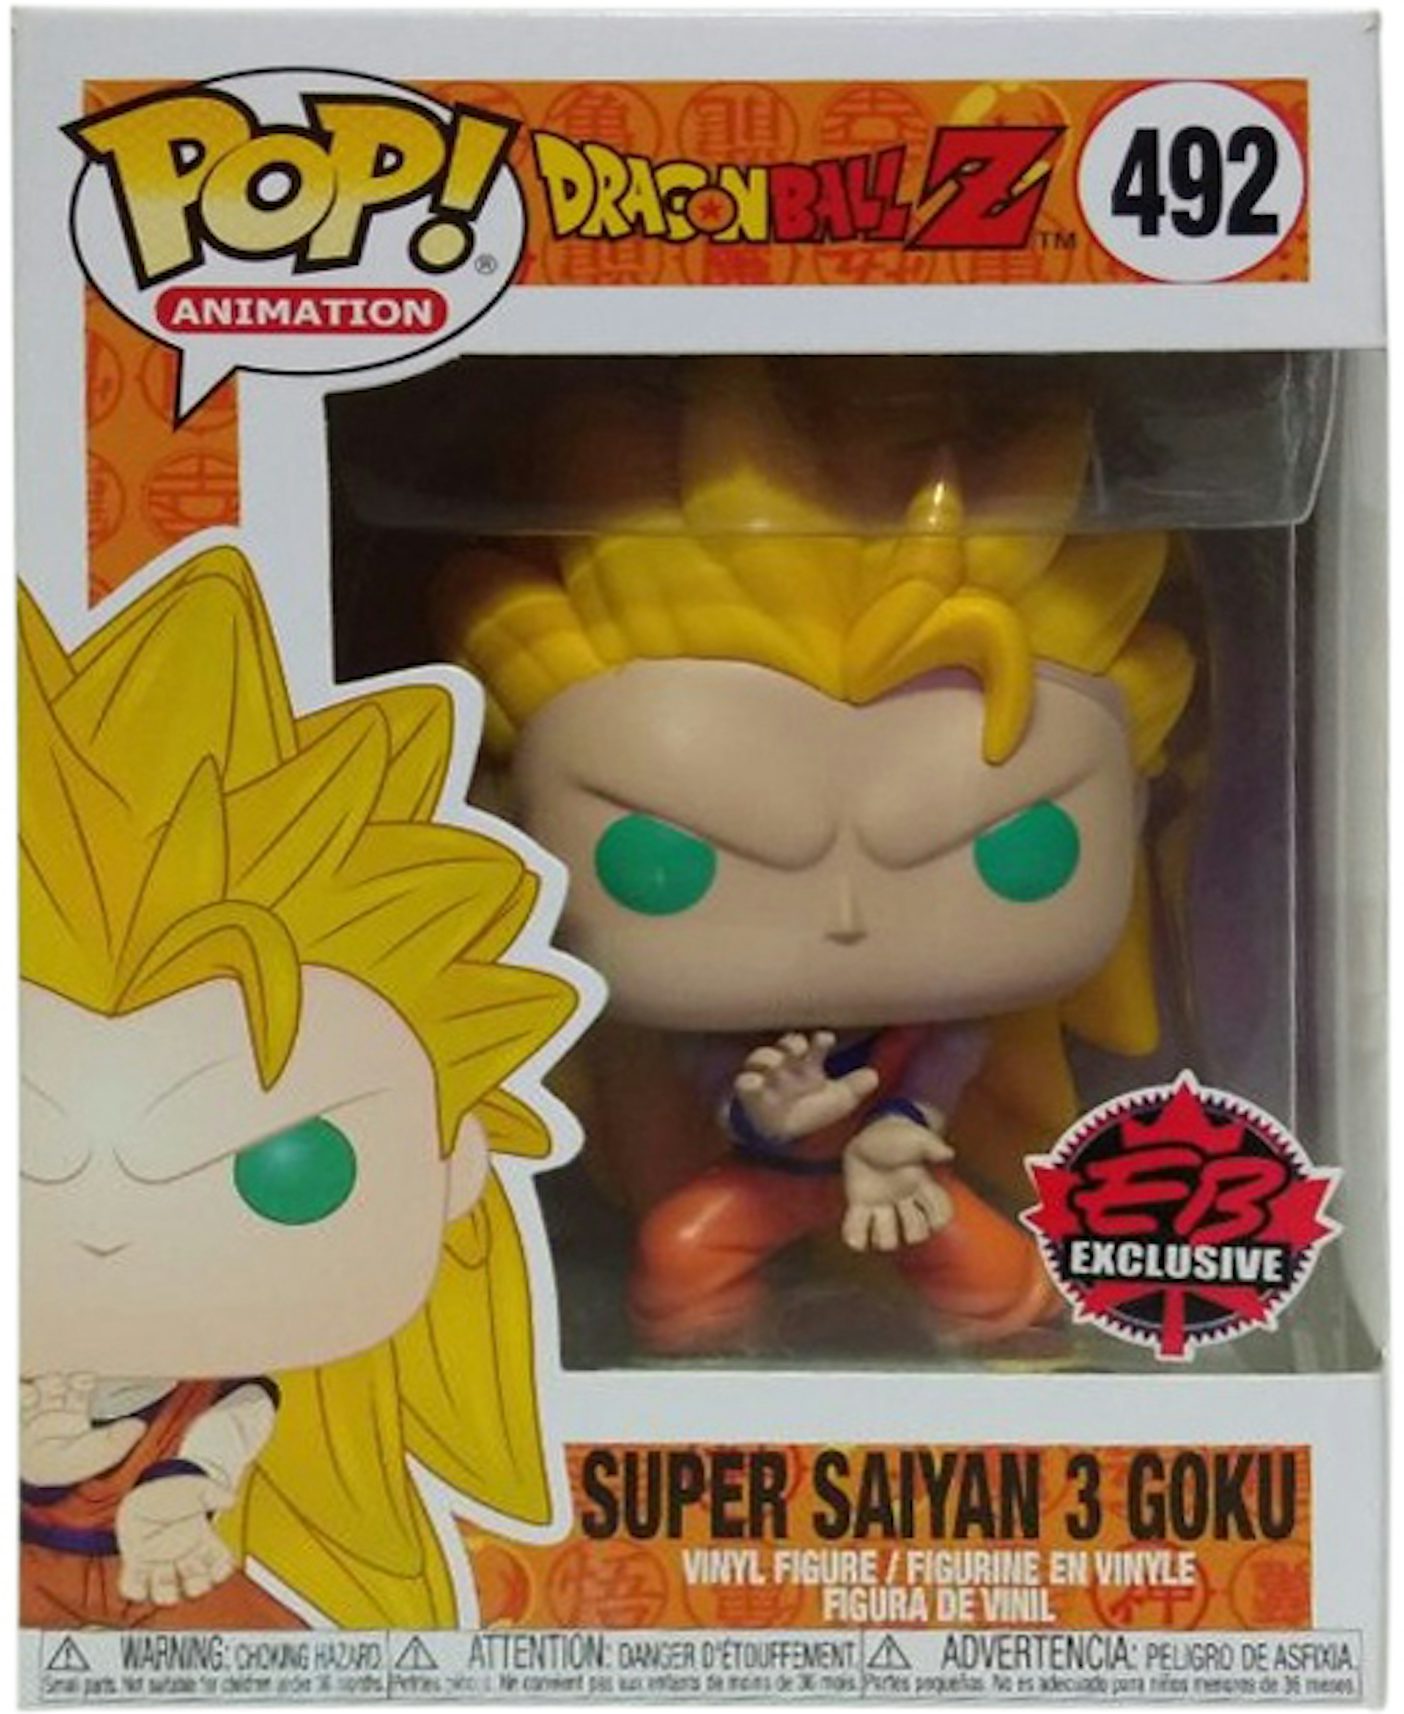 Boneco Funko Pop Dragon Ball Super Saiyan 3 Goku ATC 492 - Início